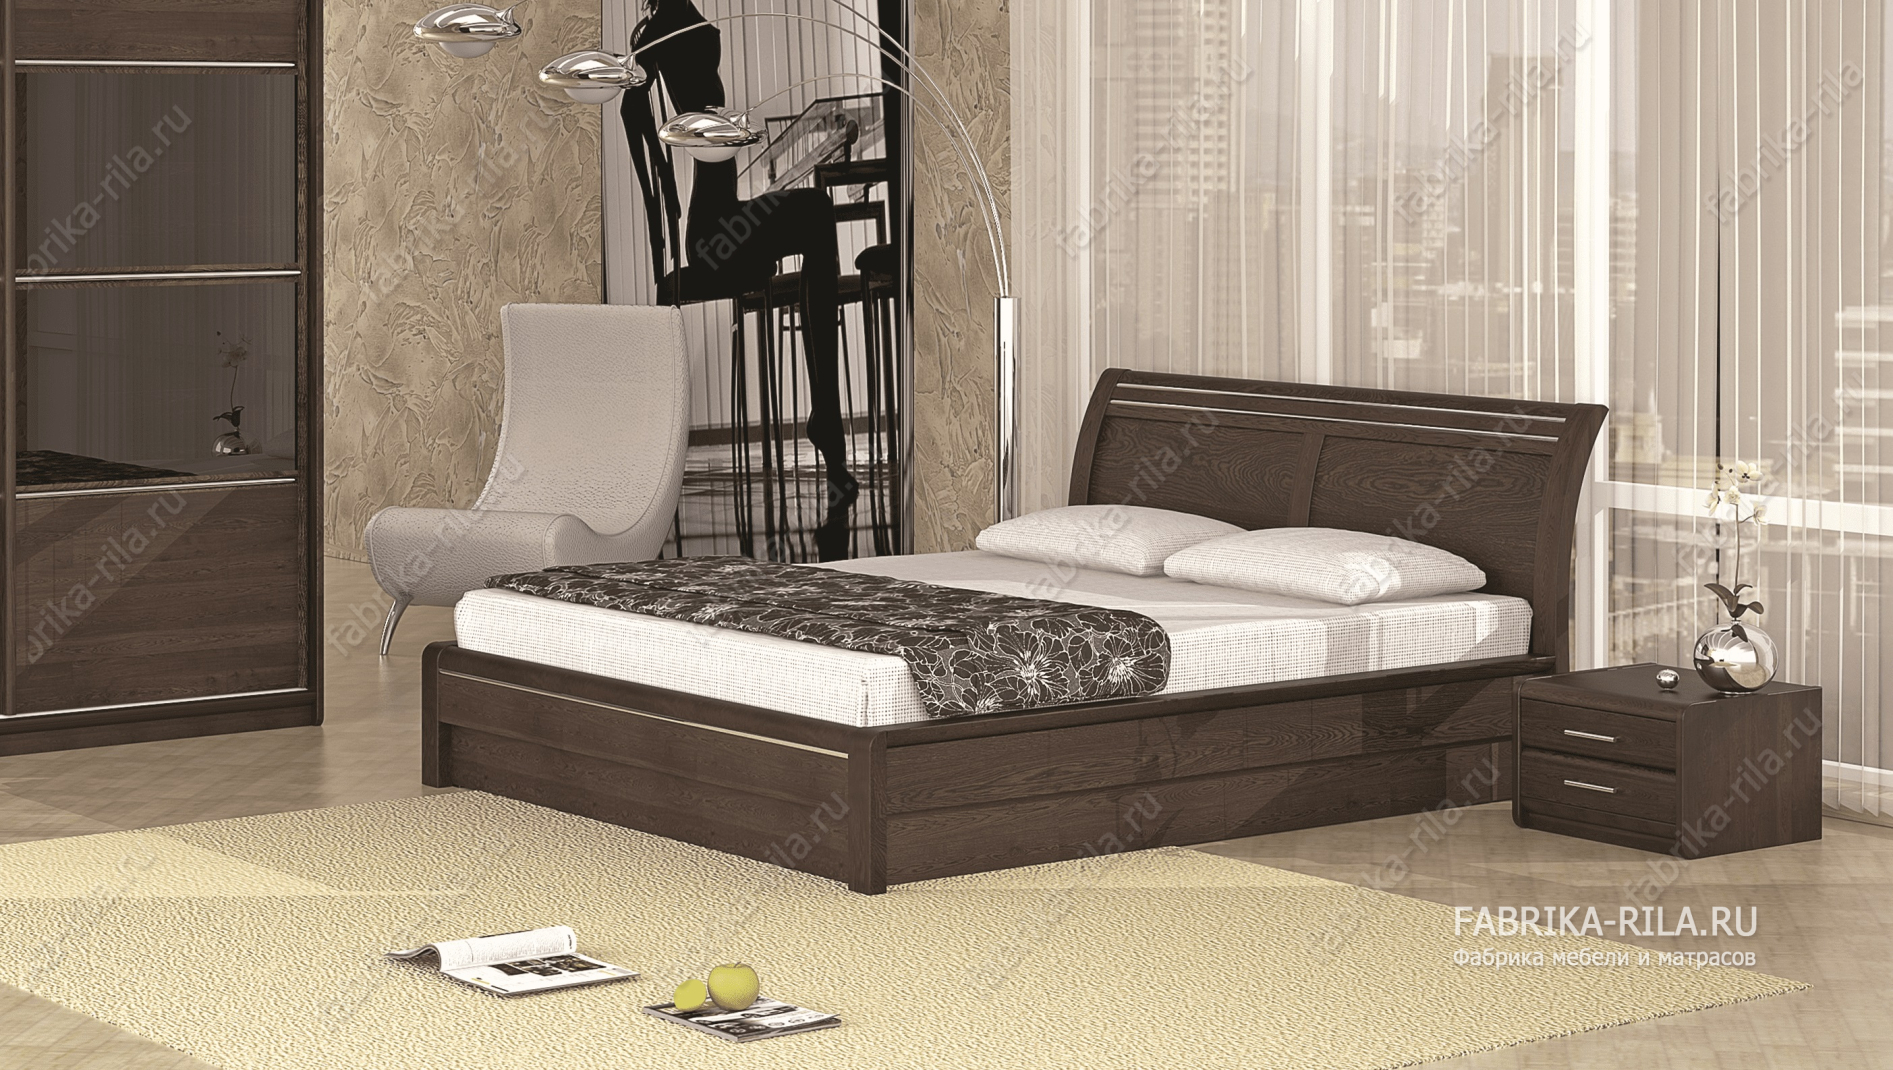 Кровать Okaeri 2 — 90x190 см. из ясеня